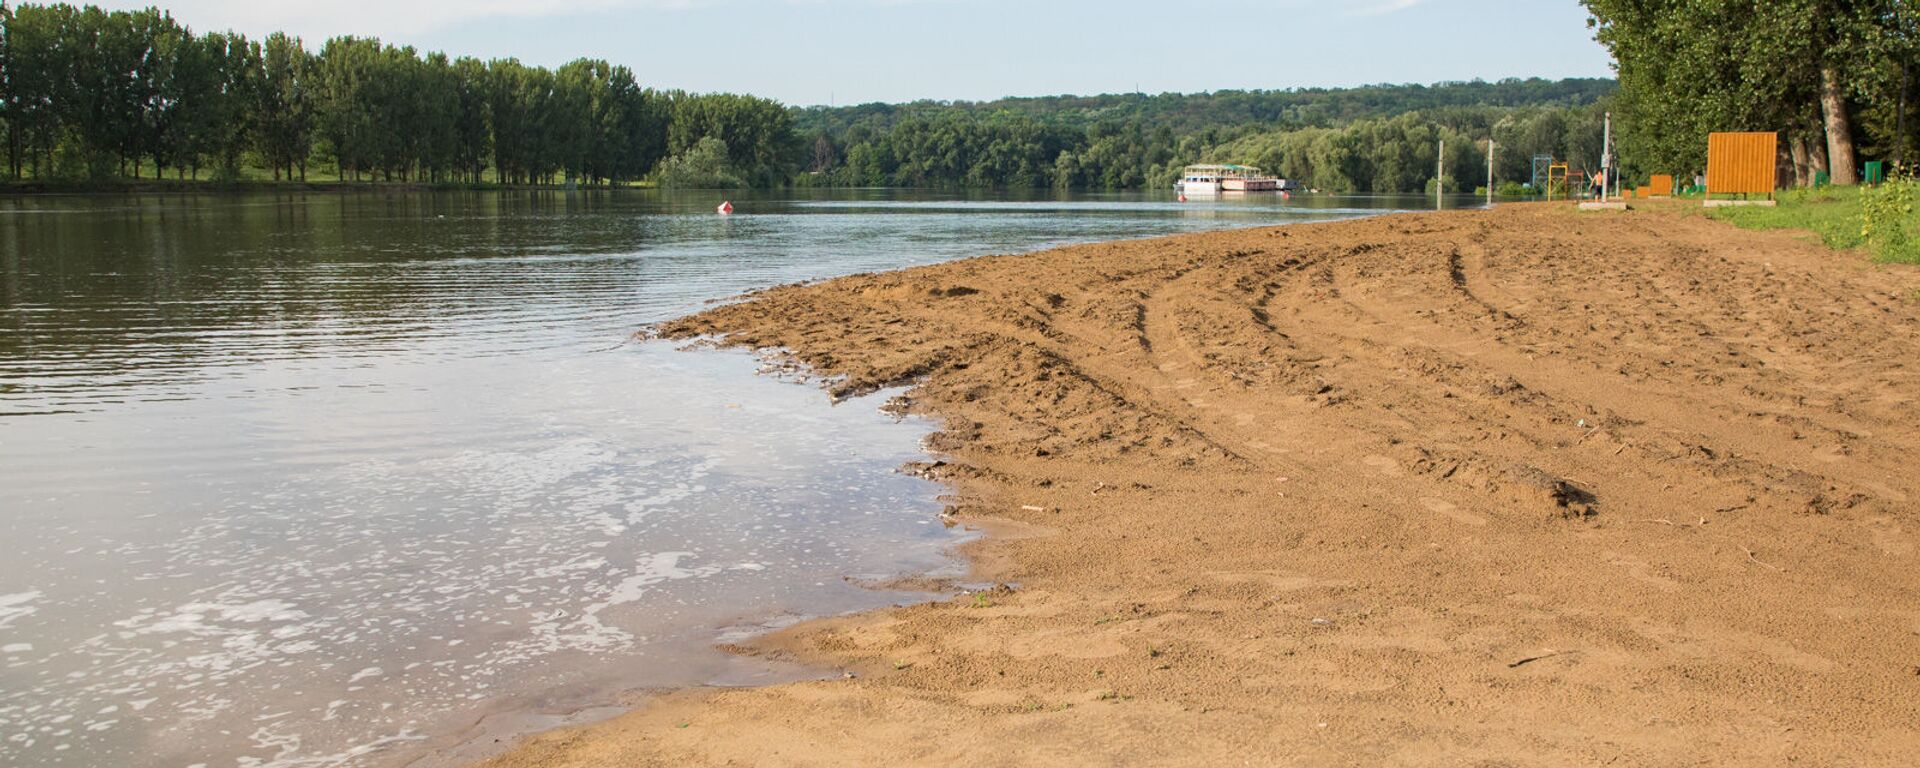 Pericol de inundații provocat de creșterea nivelului de apă în râul Nistru în urma ploilor abundente - Sputnik Moldova-România, 1920, 07.08.2020